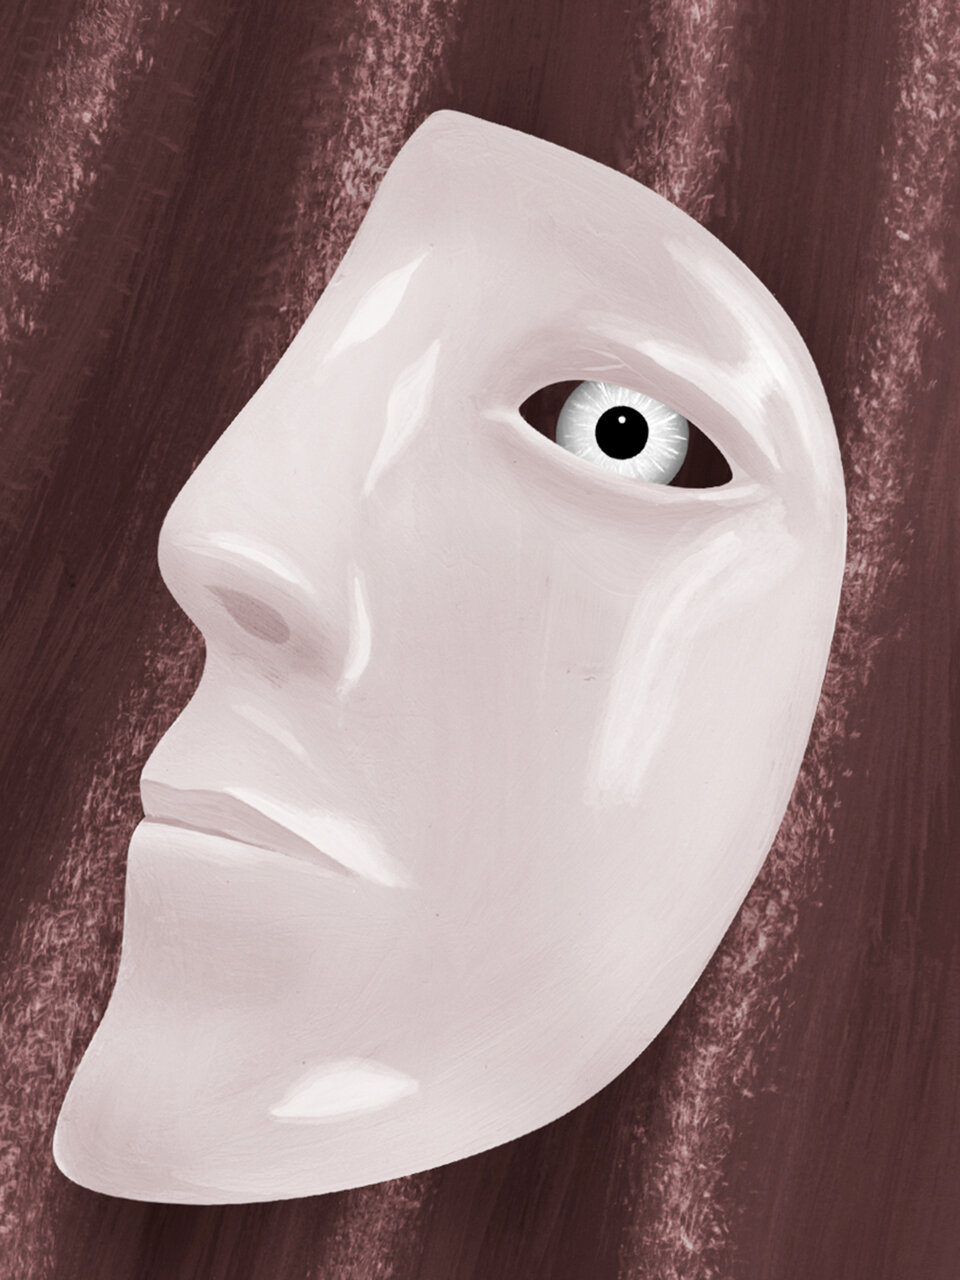 Illustration einer halben Gesichtsmaske mit Auge